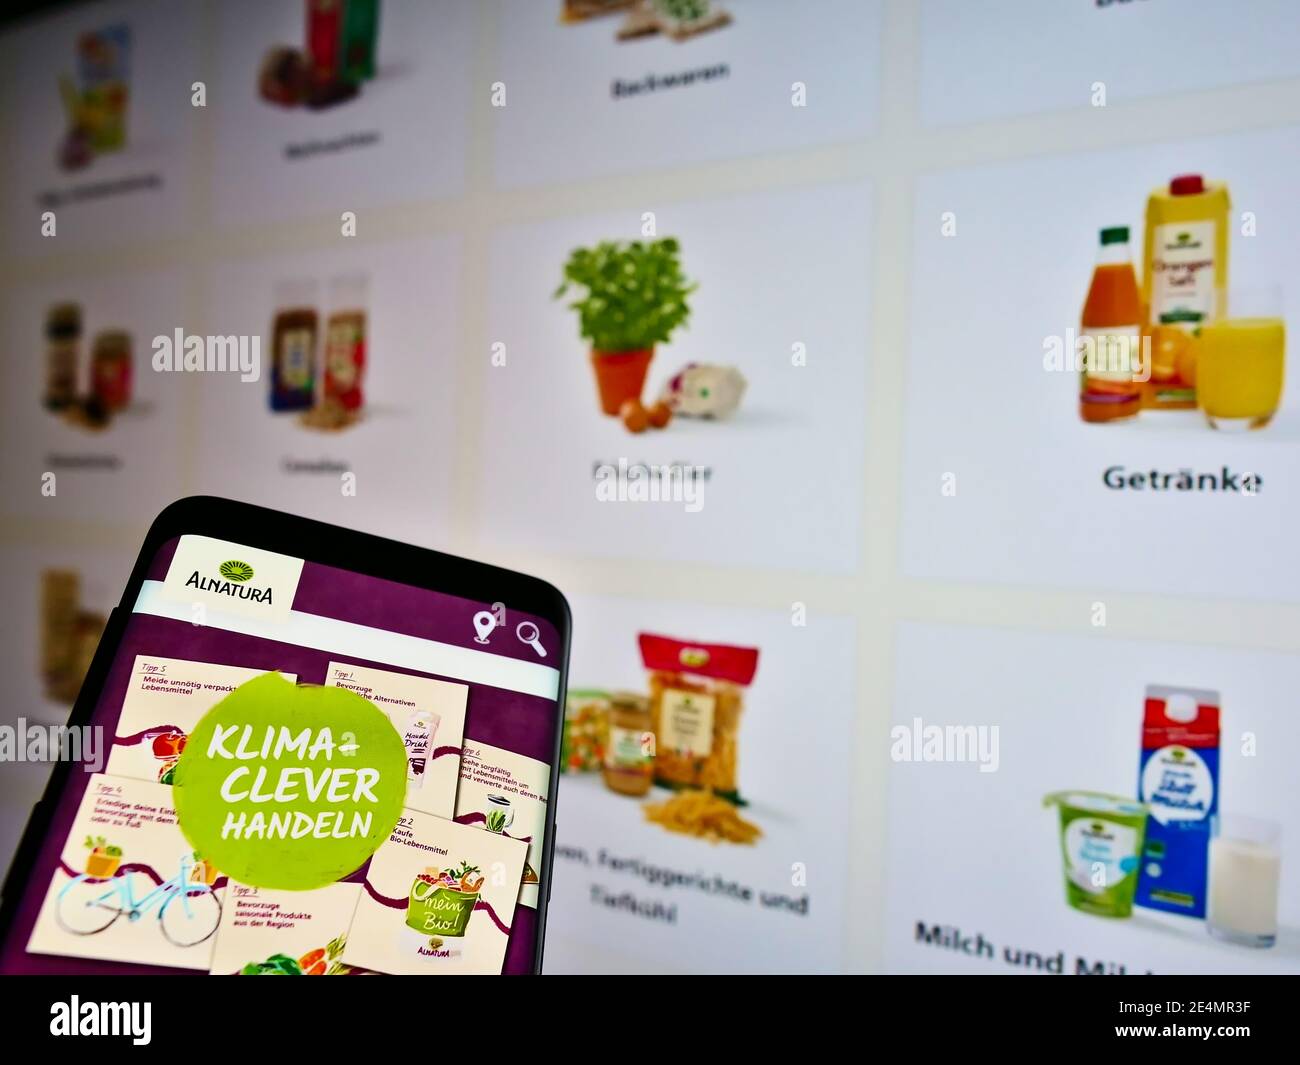 Smartphone avec logo de la chaîne allemande de supermarchés d'aliments biologiques Alnaturaa Produktions- und Handels GmbH sur écran avec des produits. Mise au point sur l'affichage du téléphone. Banque D'Images